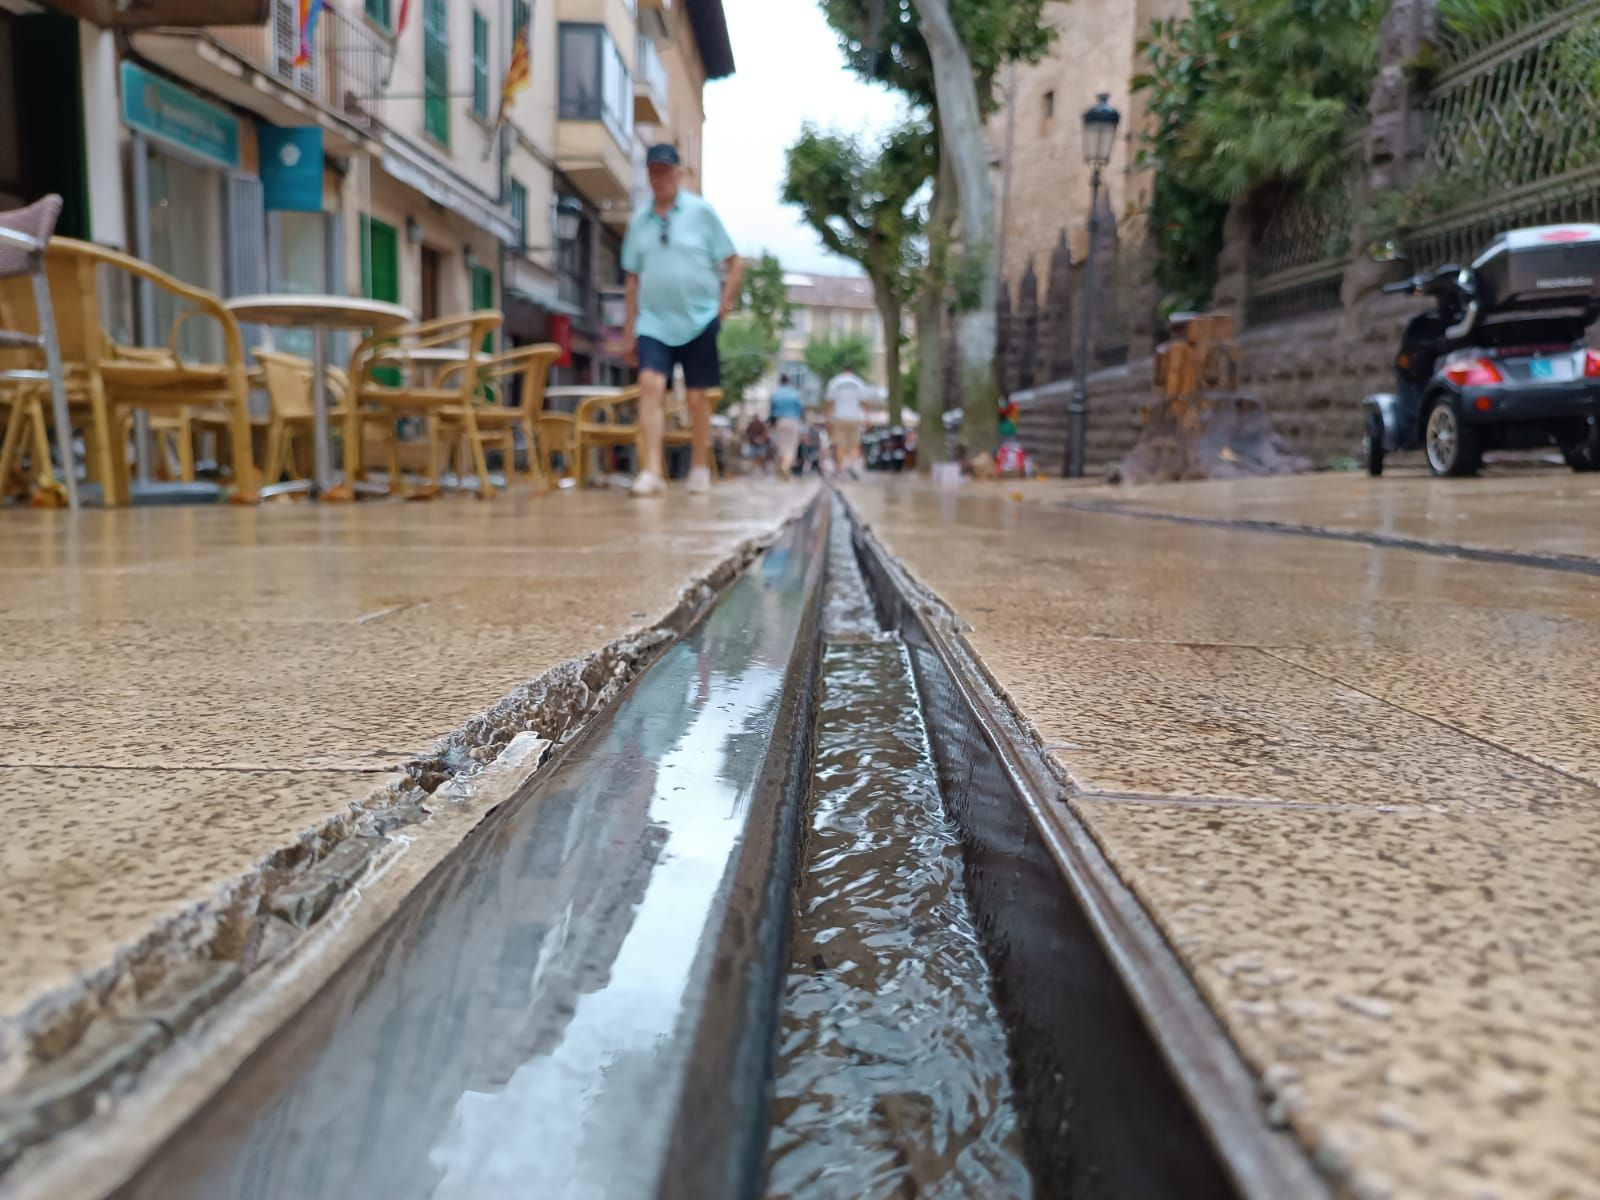 Tormentas en Mallorca: Las lluvias descargan en Sóller 50 litros en veinte minutos